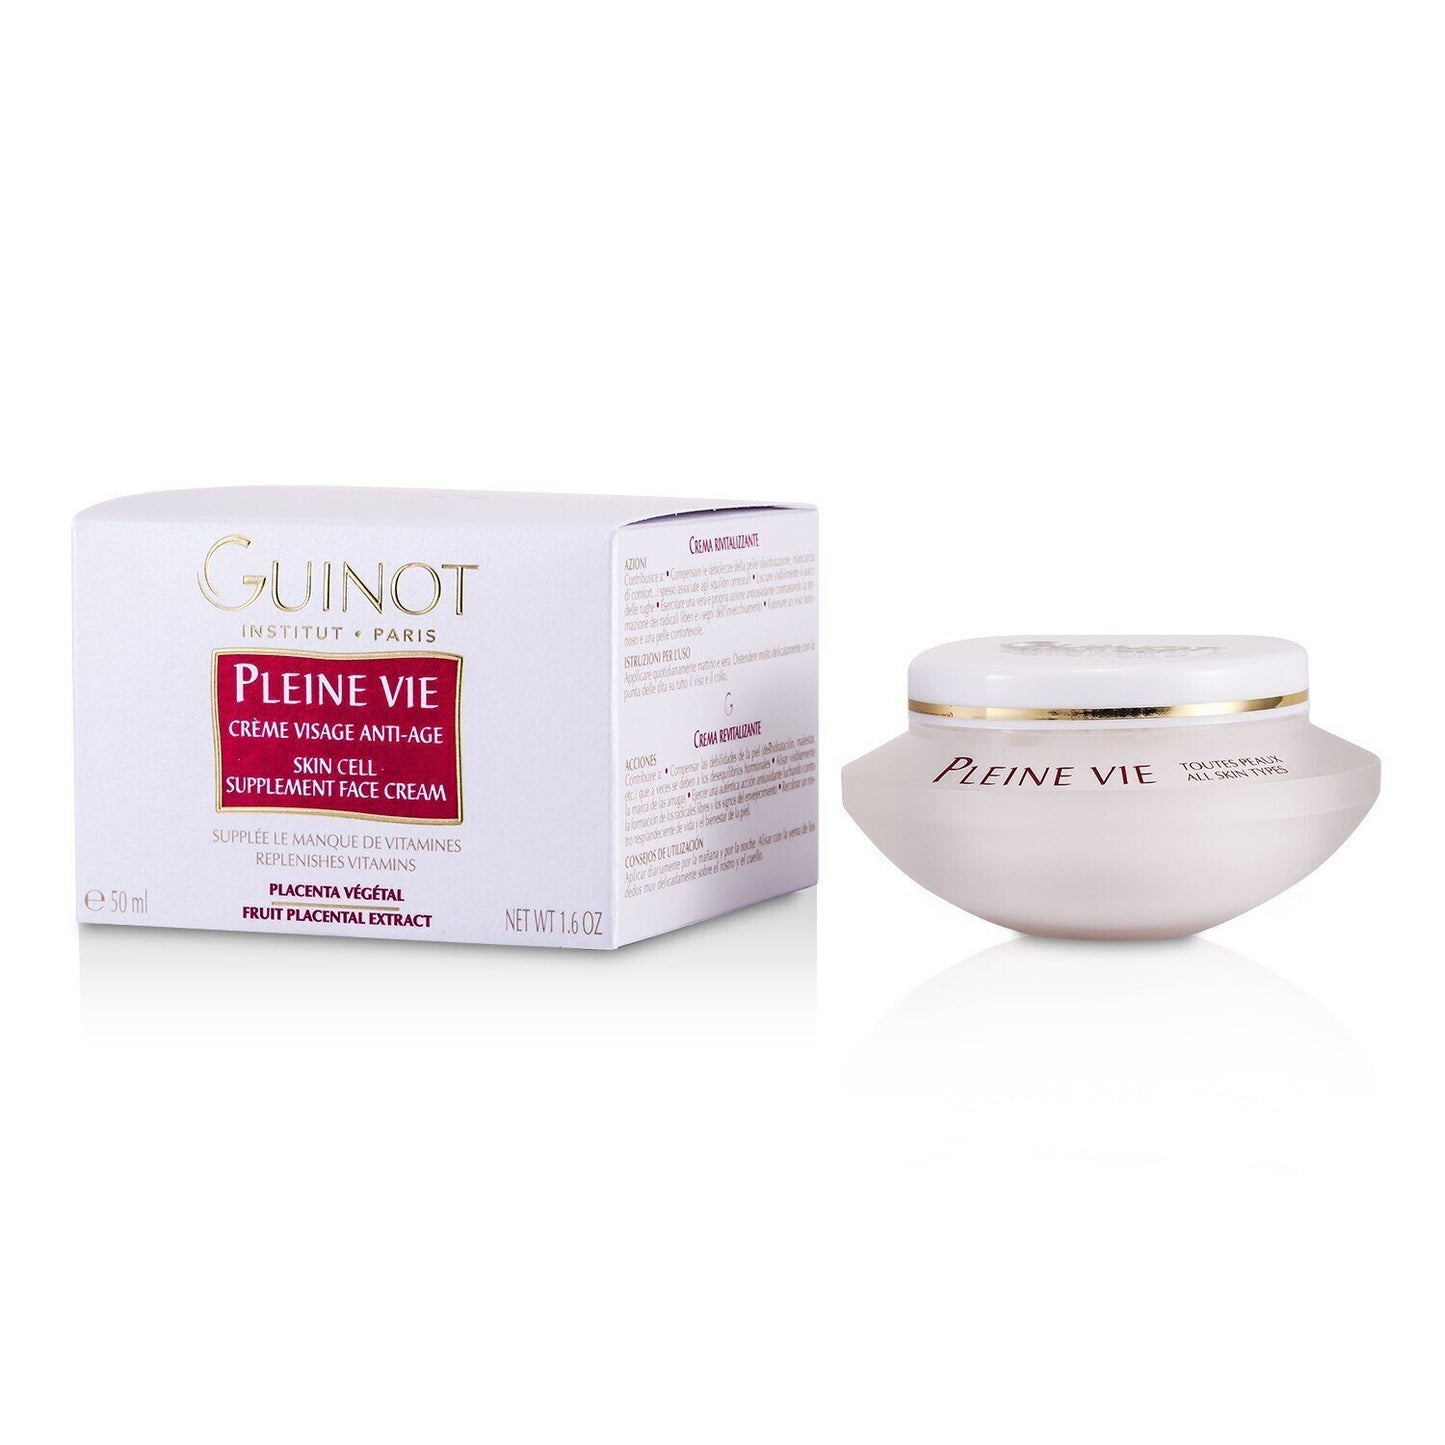 Guinot - Pleine Vie Anti-Age Skin Supplement Cream - 50ml/1.6oz StrawberryNet - lolaluxeshop